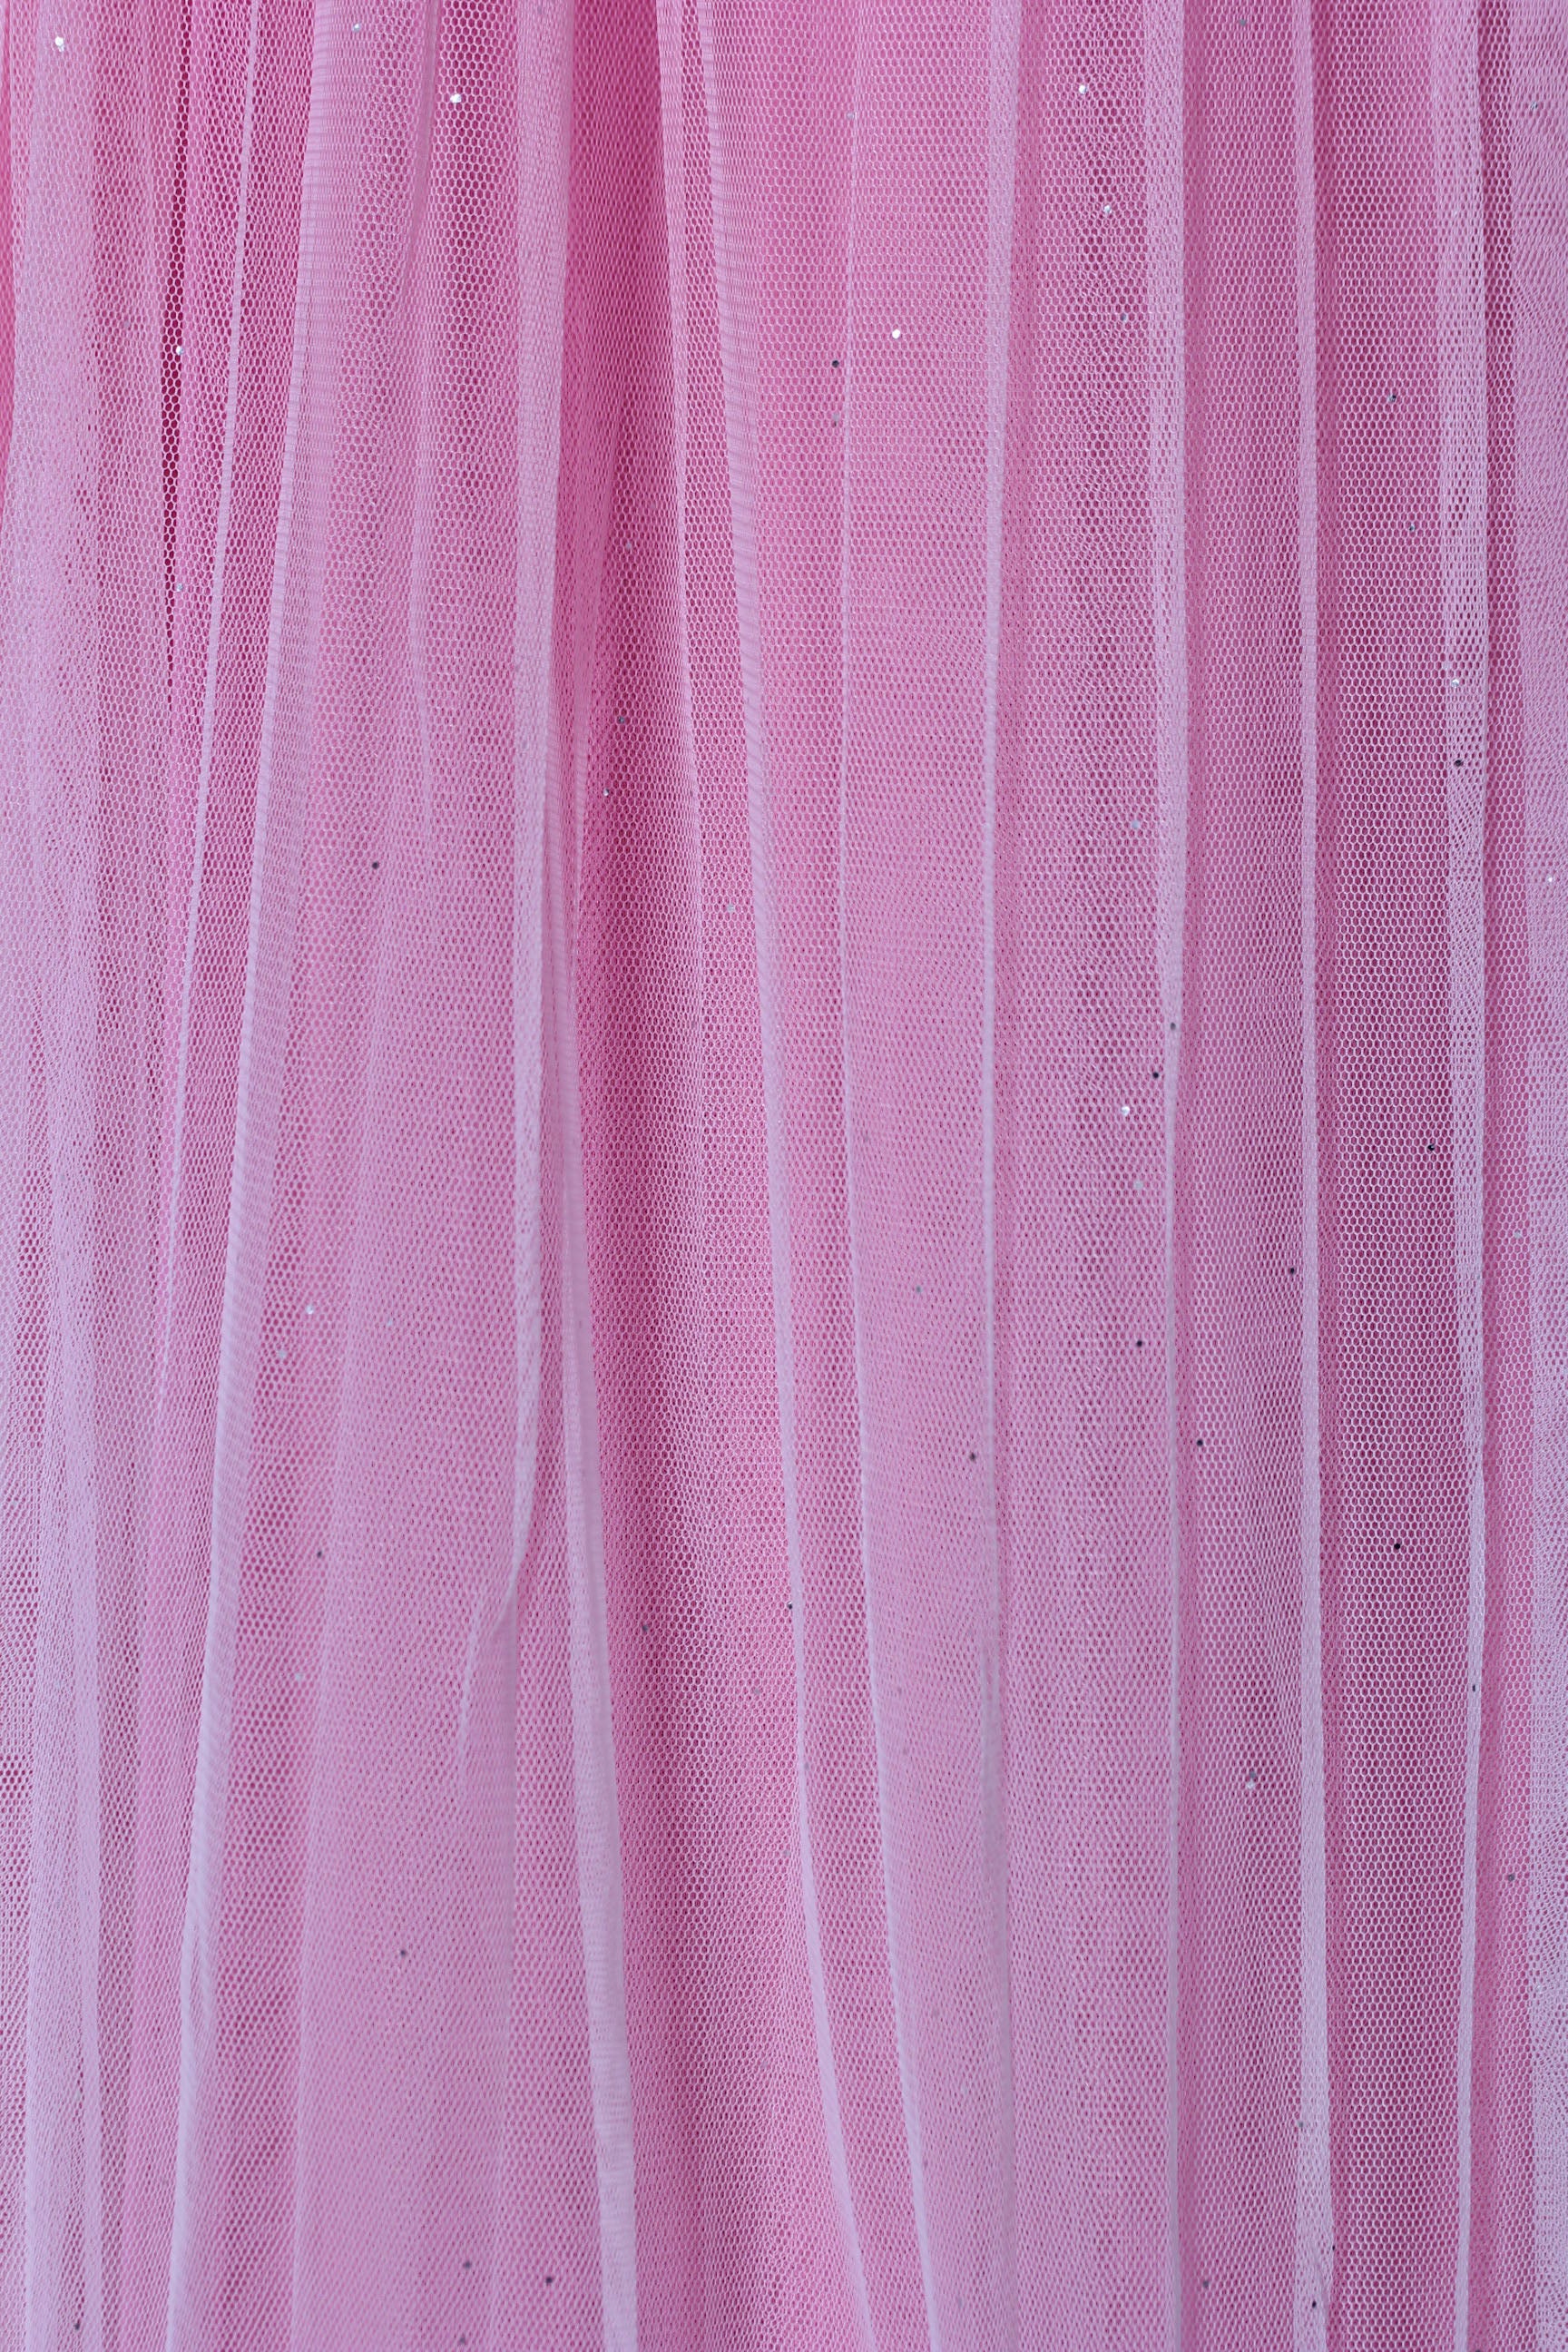 Ladies Skirt LS-200 Pink